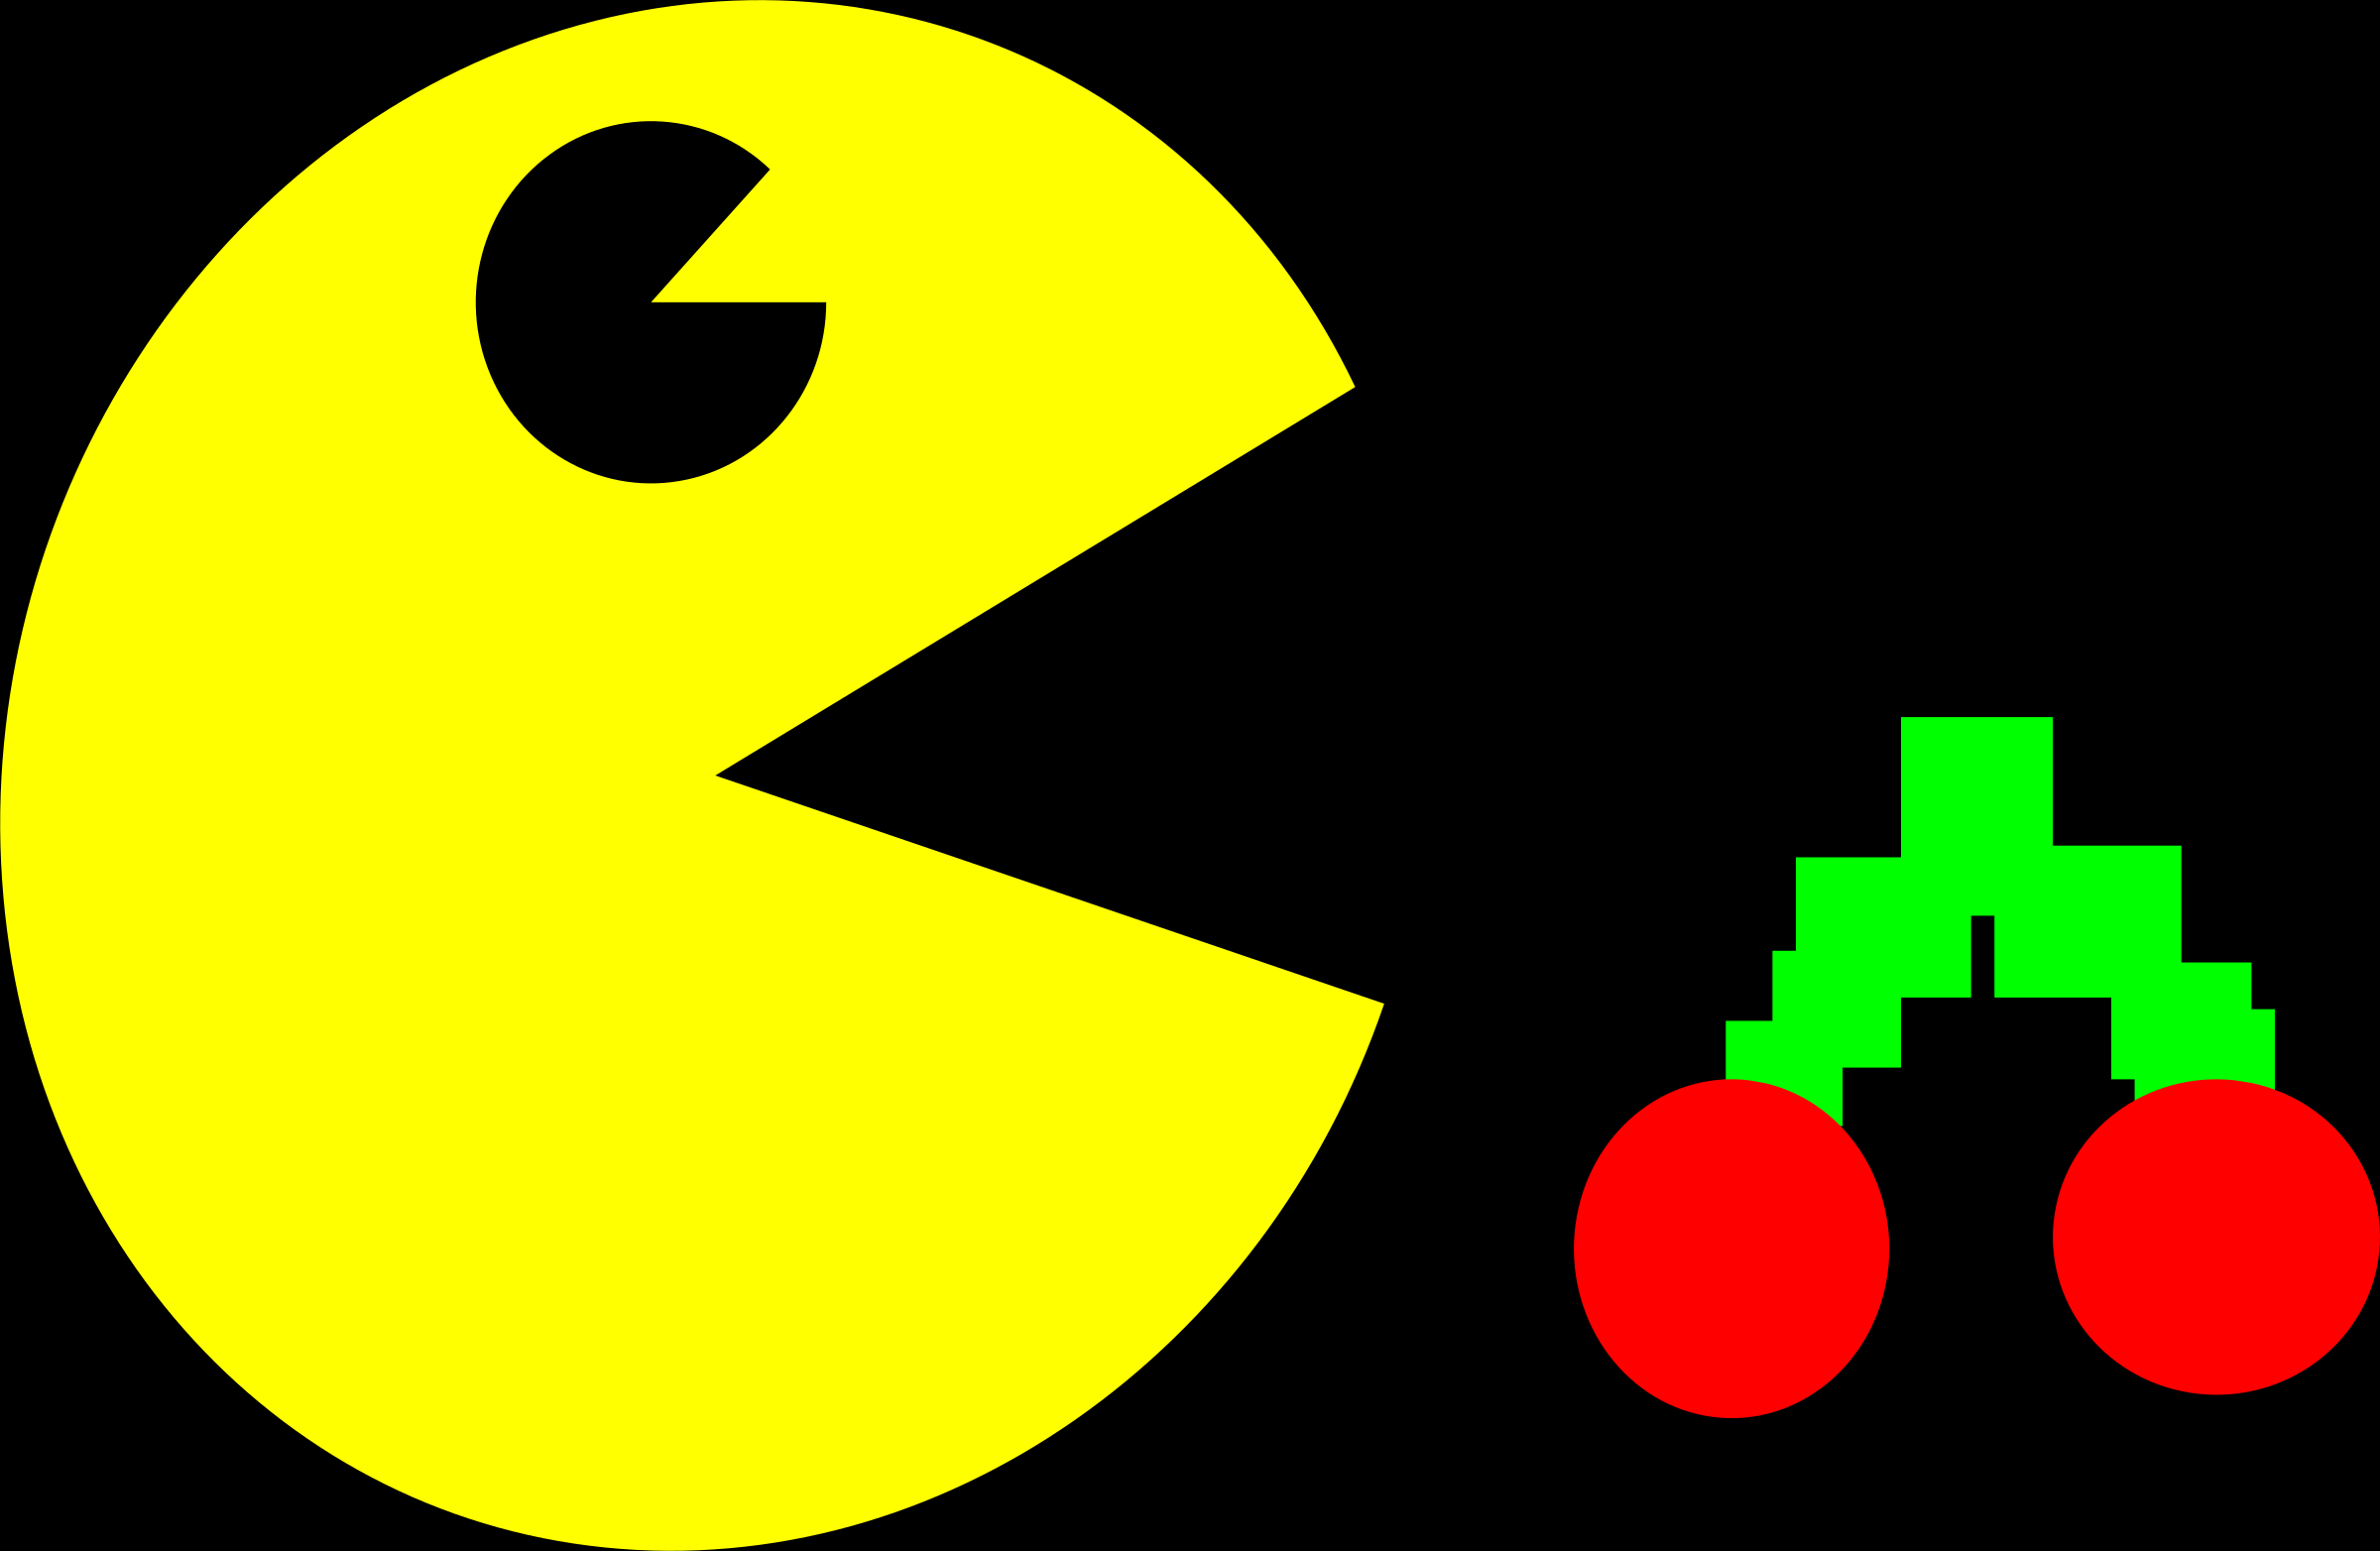 Pacman phonk. Пэкмен игра. Pacman герои. Персонажи в игре Пэкмэн. Gfr5vfy.